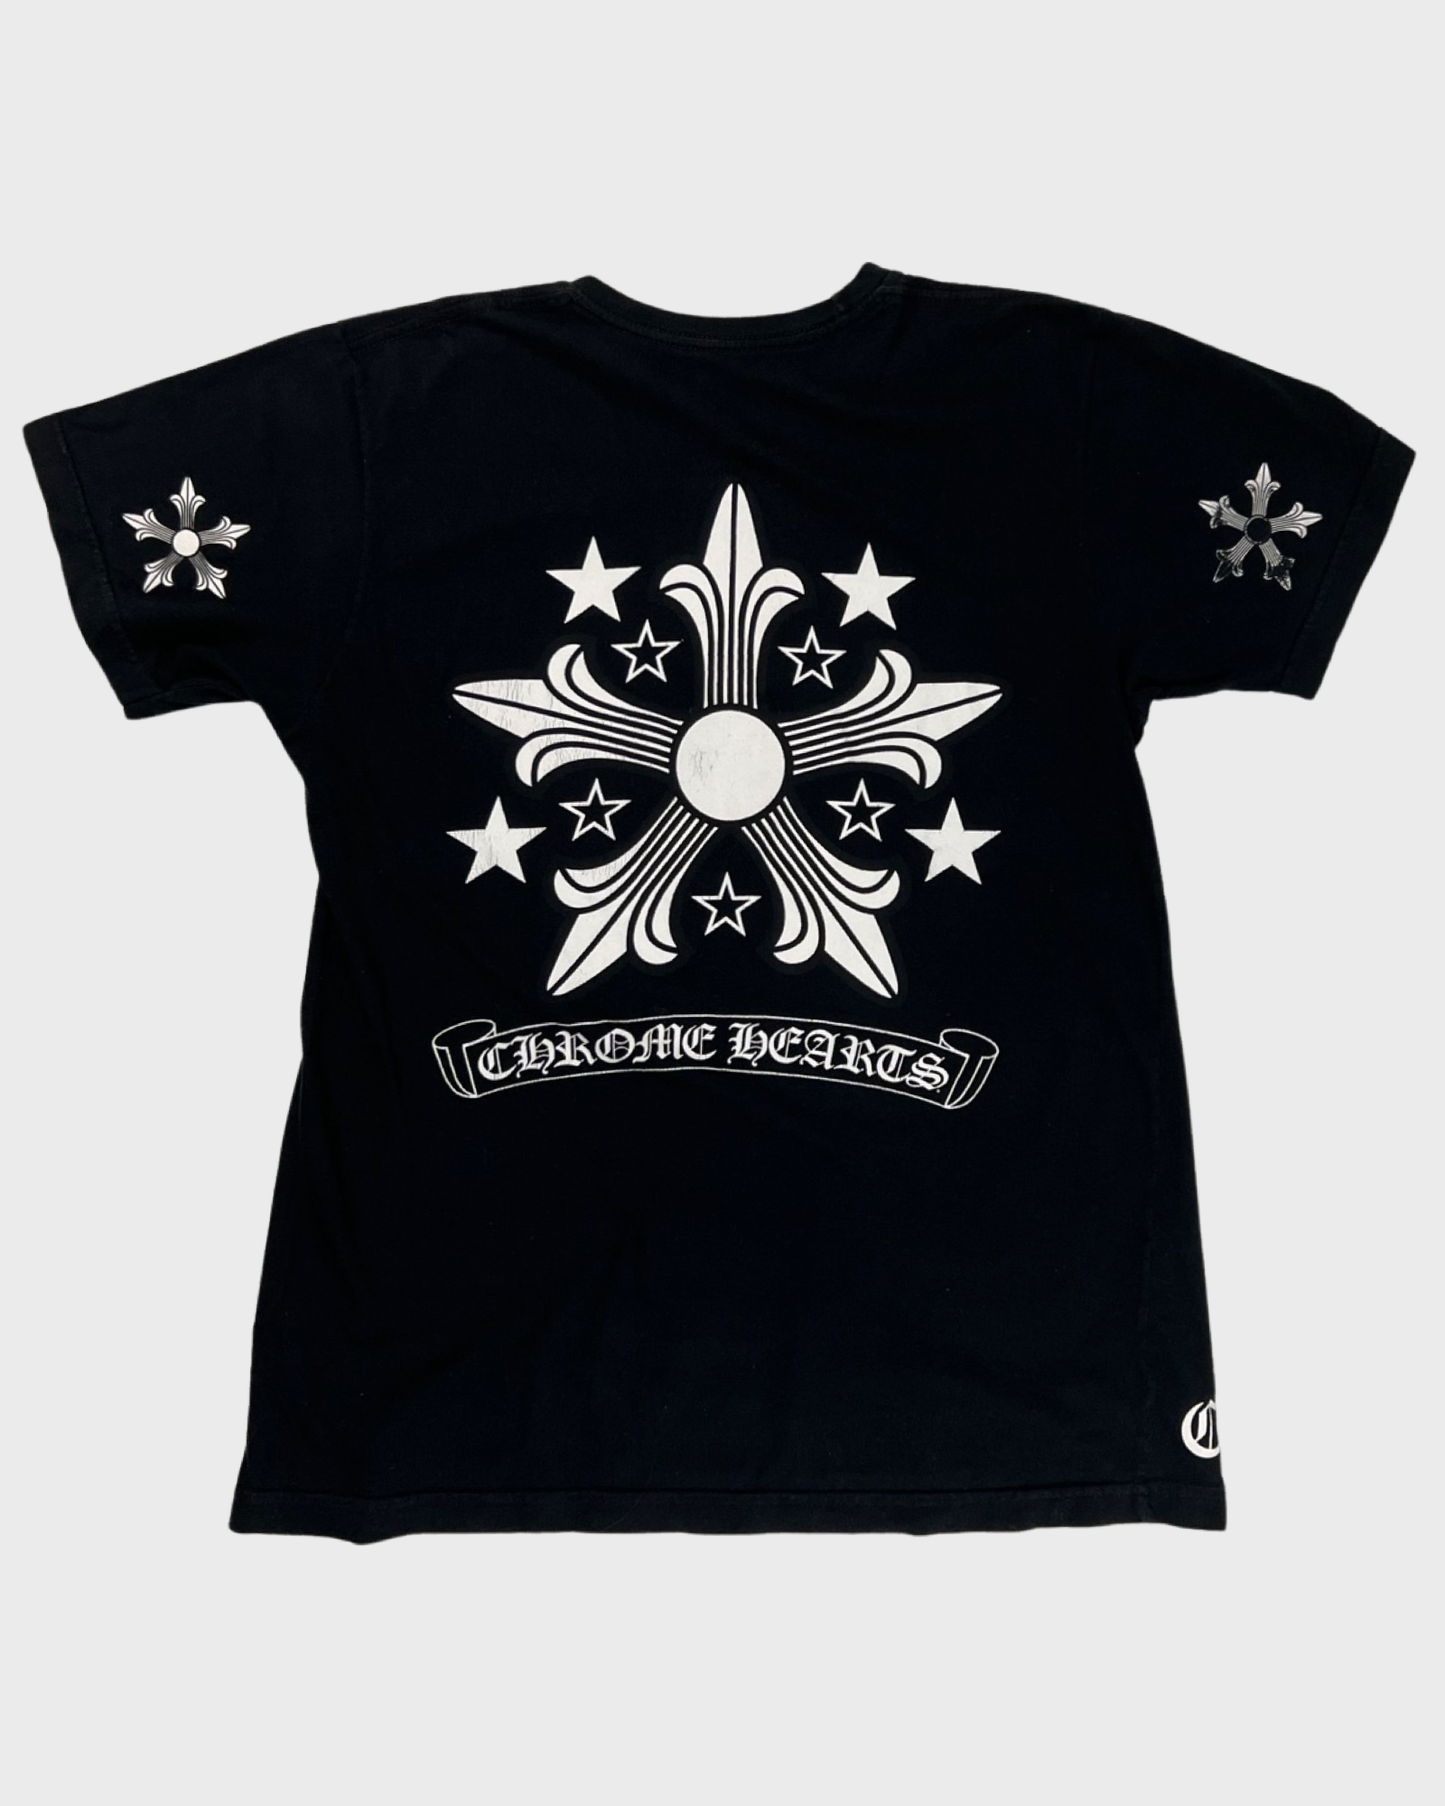 Chrome Hearts Shuriken T-shirt SZ:M